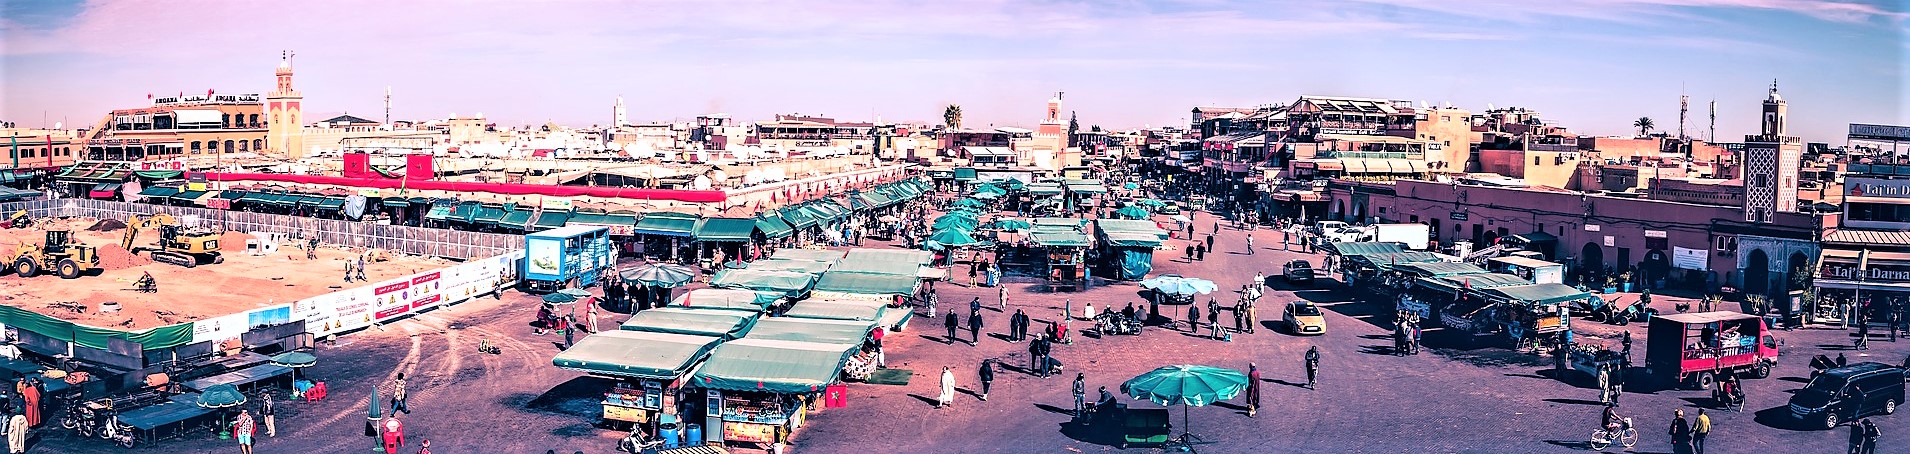 Marrakech REVIEW|マラケシュ お客様の声